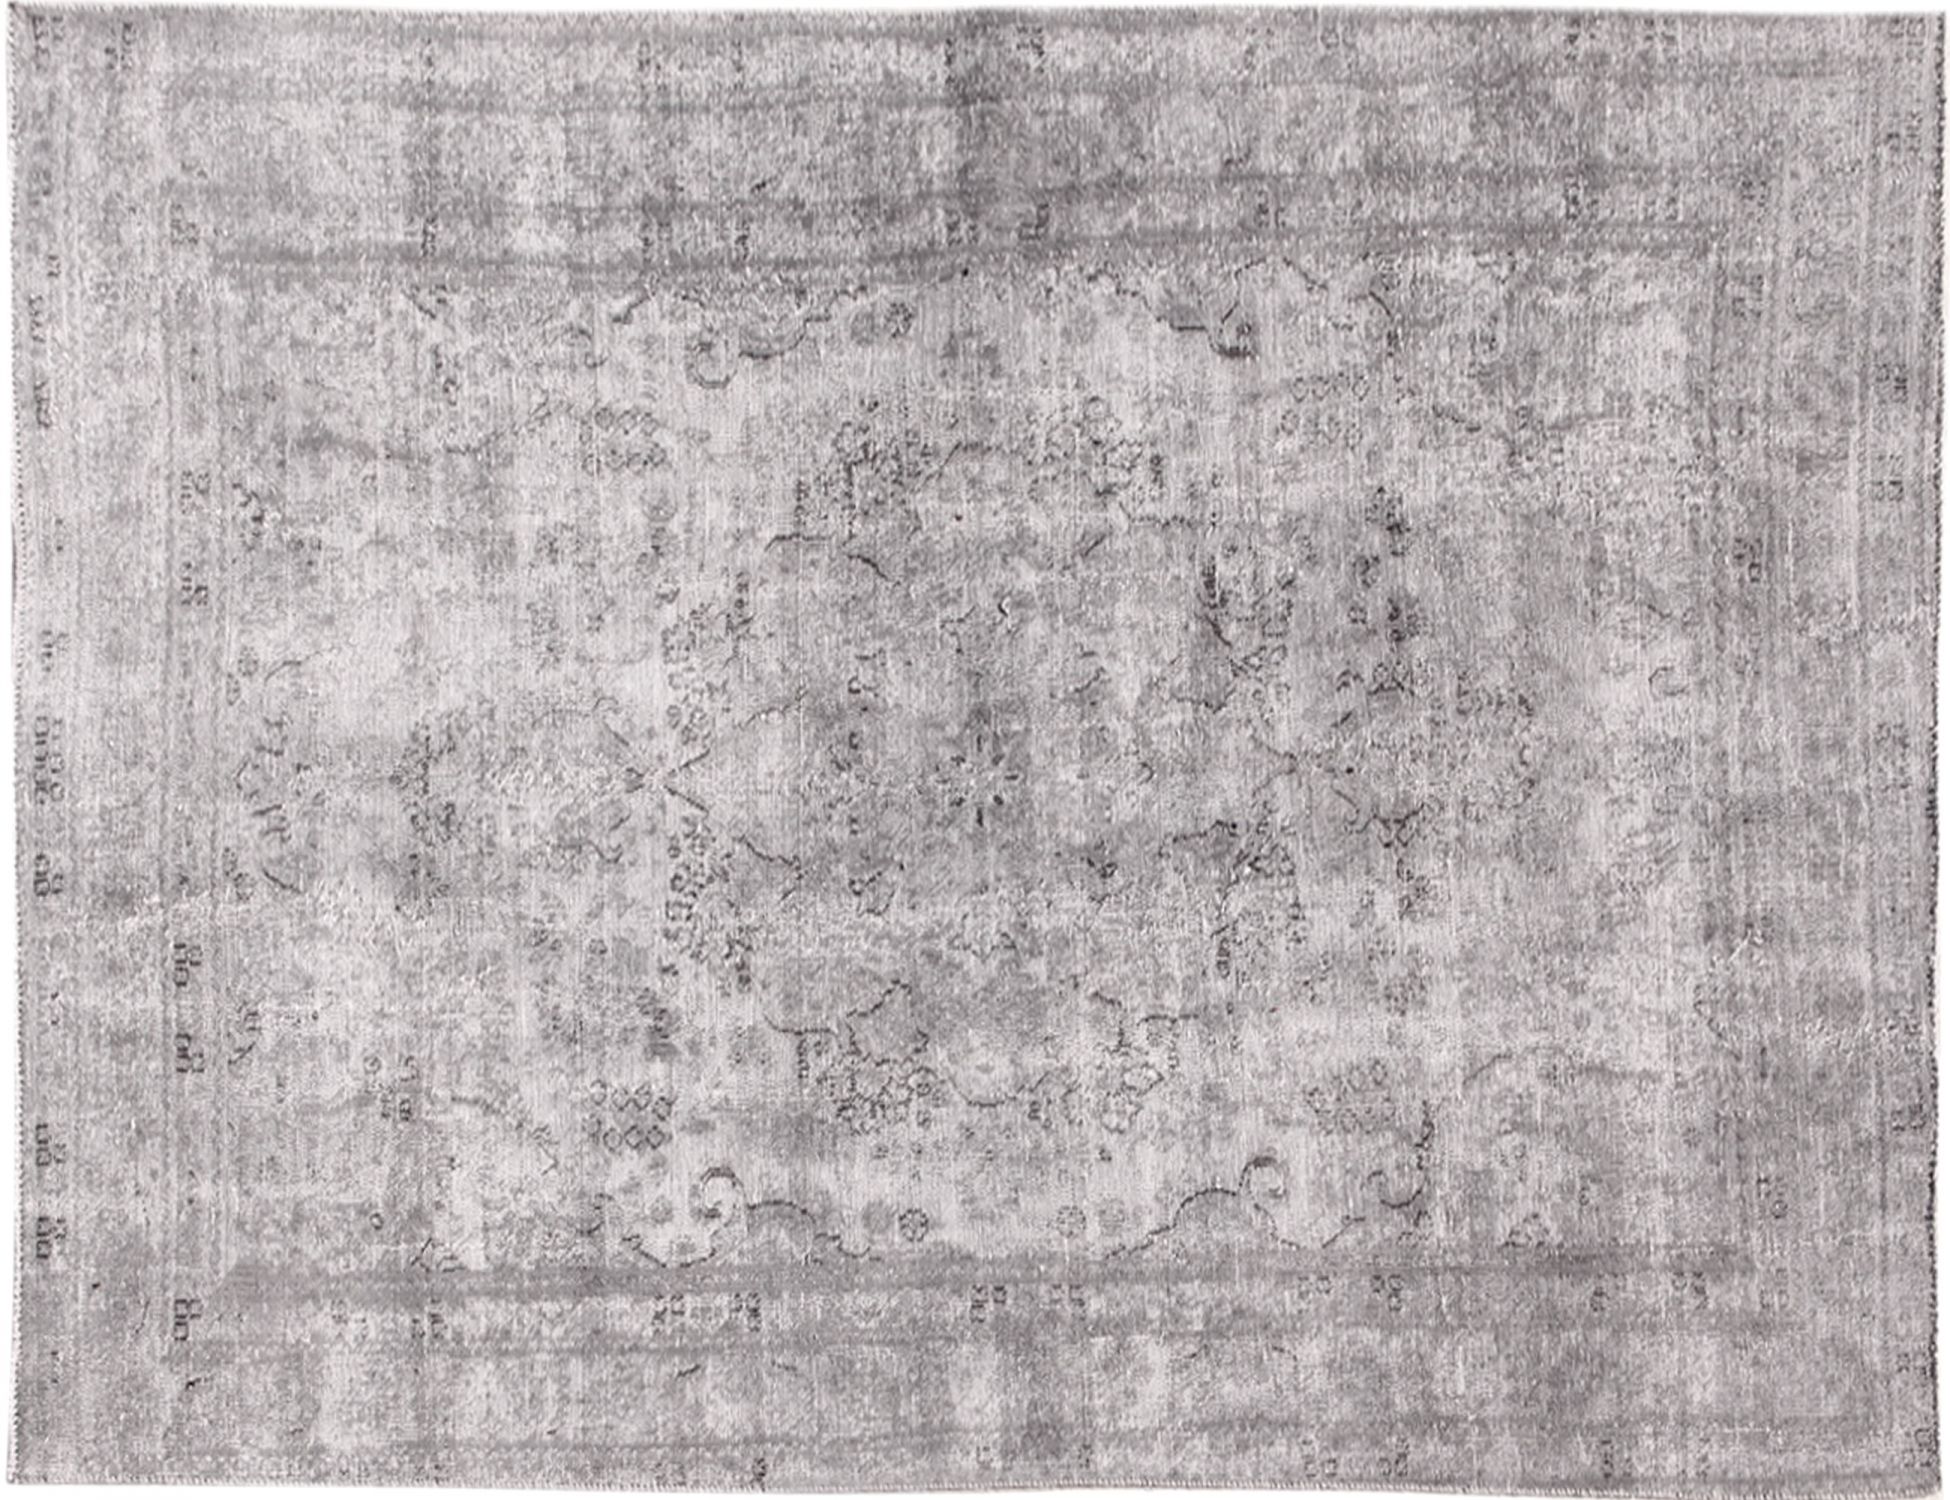 Persischer Vintage Teppich  grau <br/>270 x 180 cm